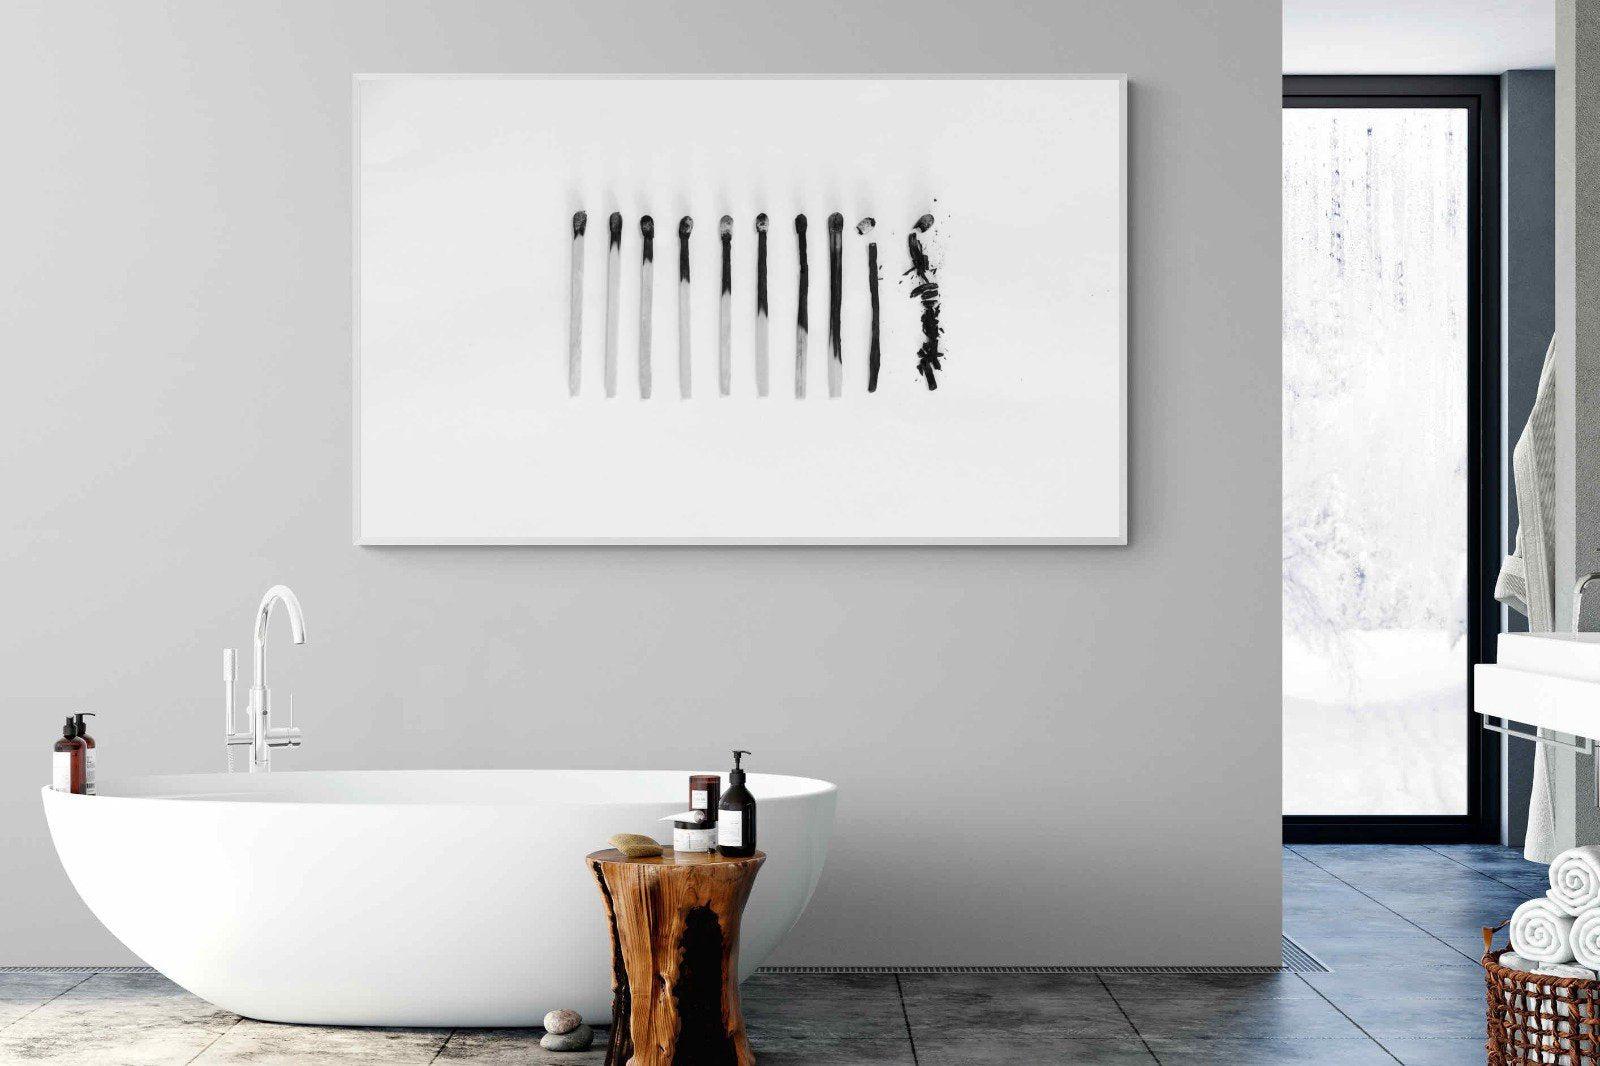 Matchsticks-Wall_Art-180 x 110cm-Mounted Canvas-White-Pixalot